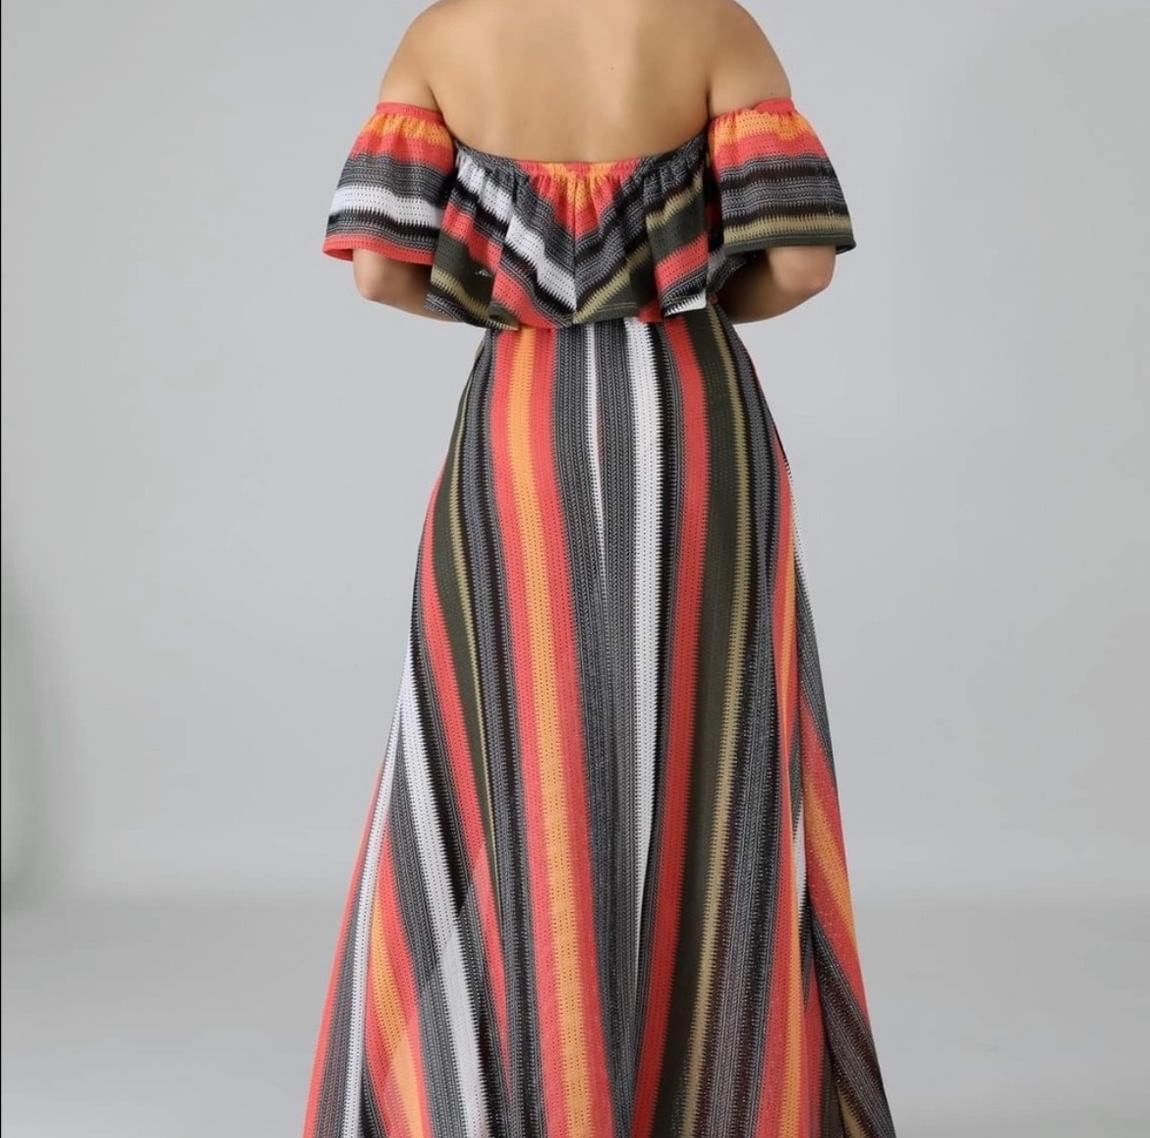 Size 12 Off The Shoulder Multicolor Side Slit Dress on Queenly